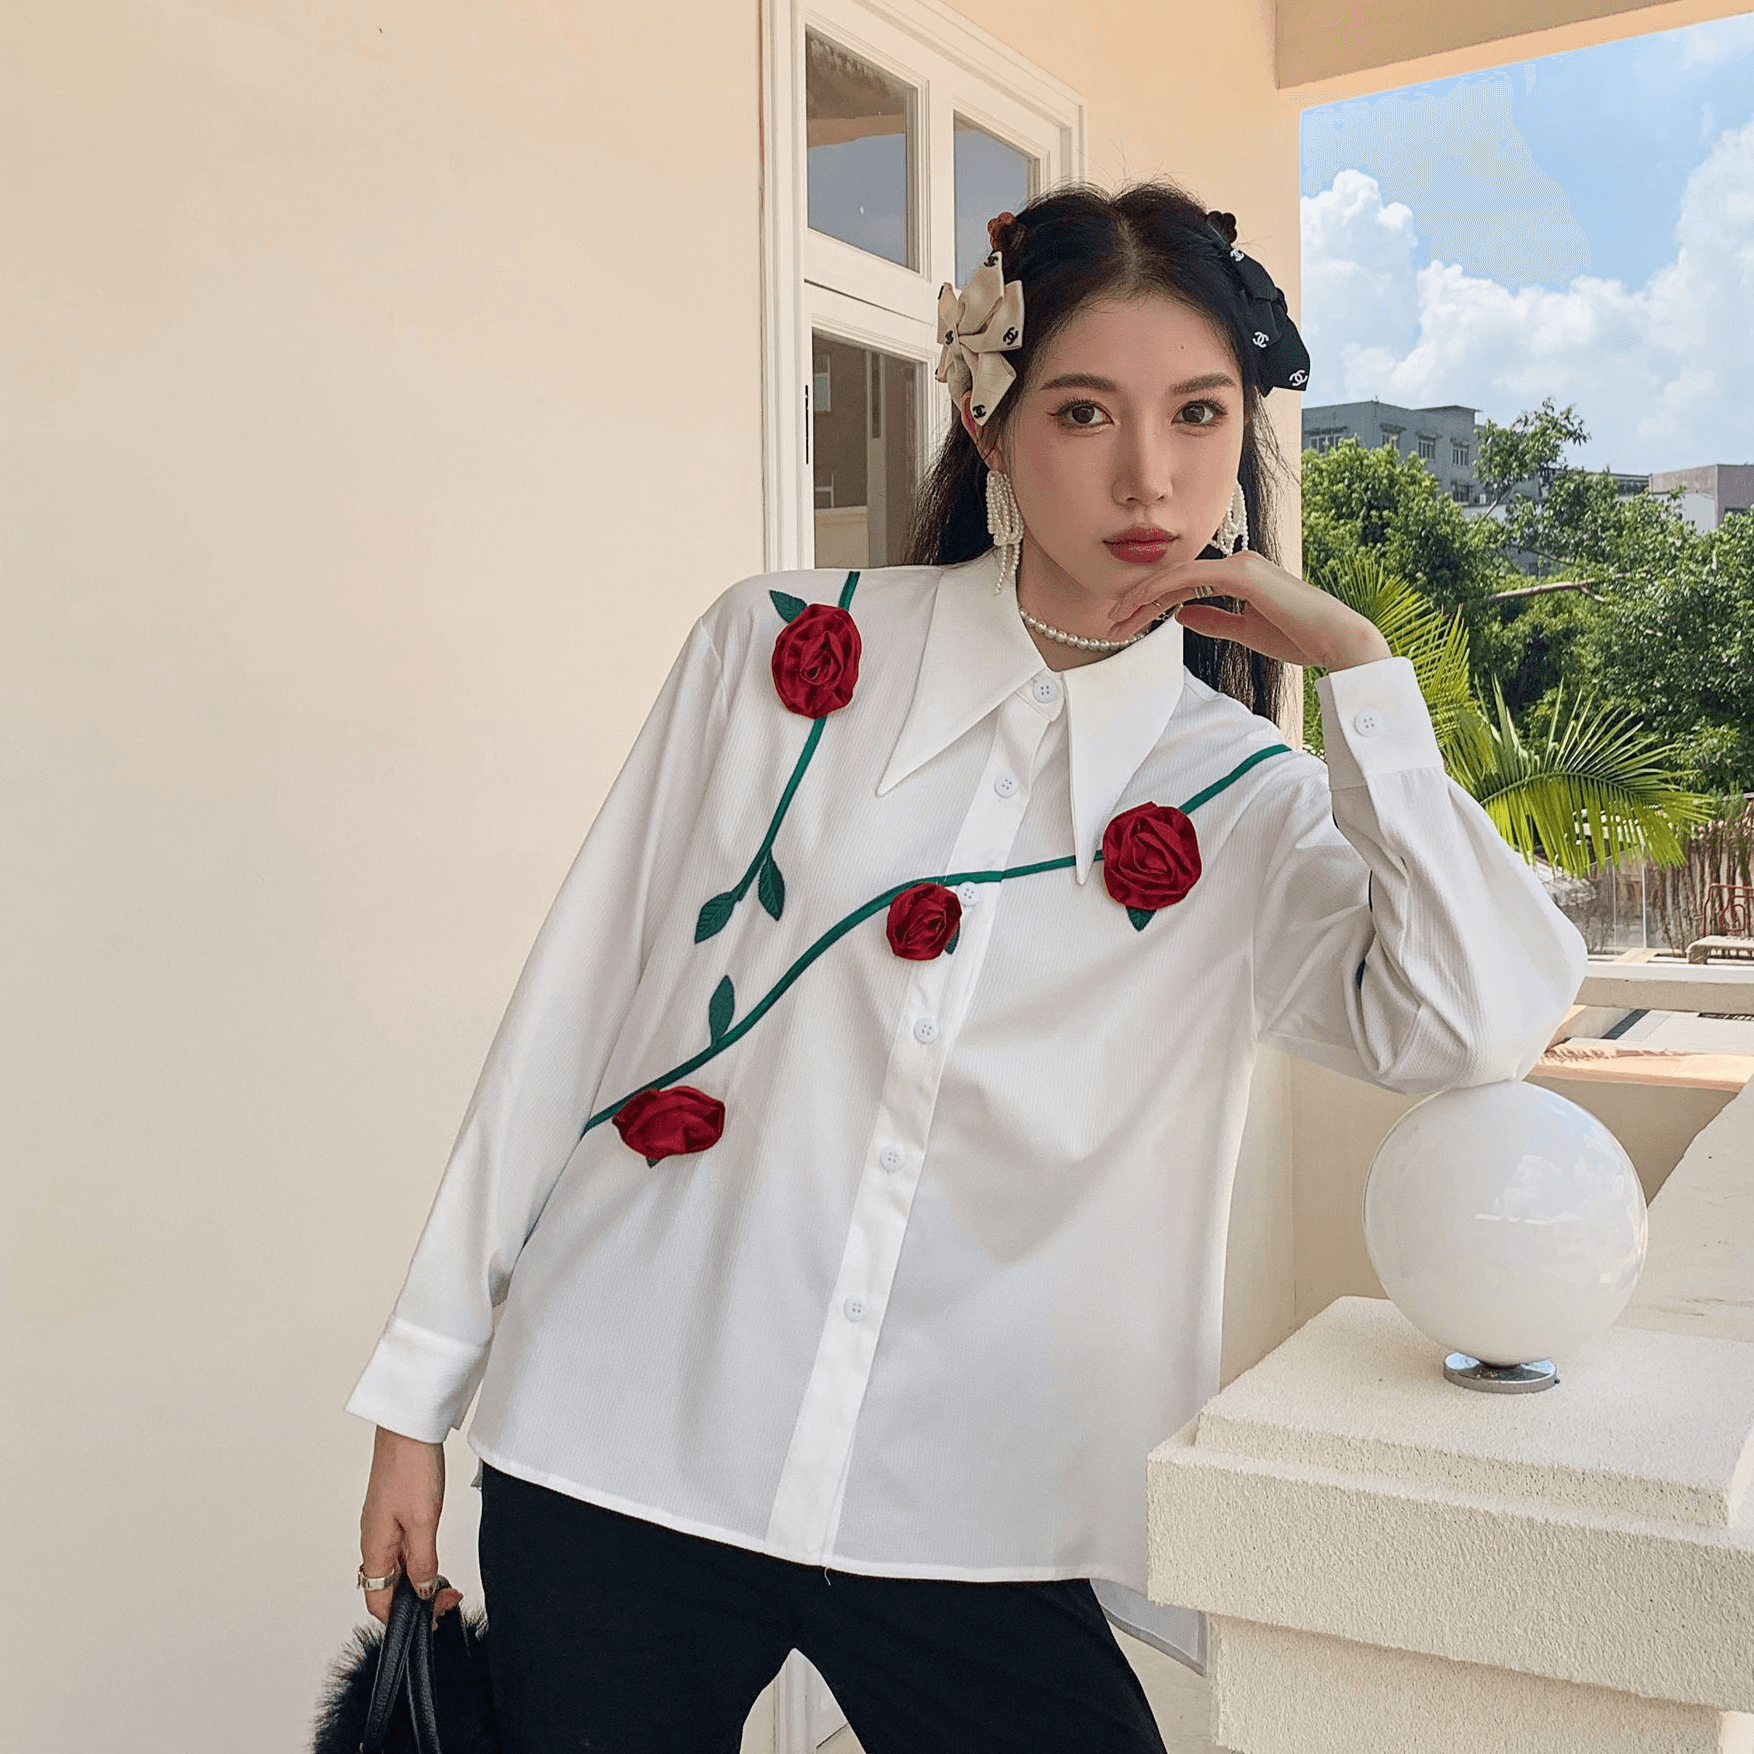 מכופתרת לבנה בגימור ורדים אדומים בולאים ללוק נשי חזק ולהופעה אופנתית ייחודית - לה איסלה 